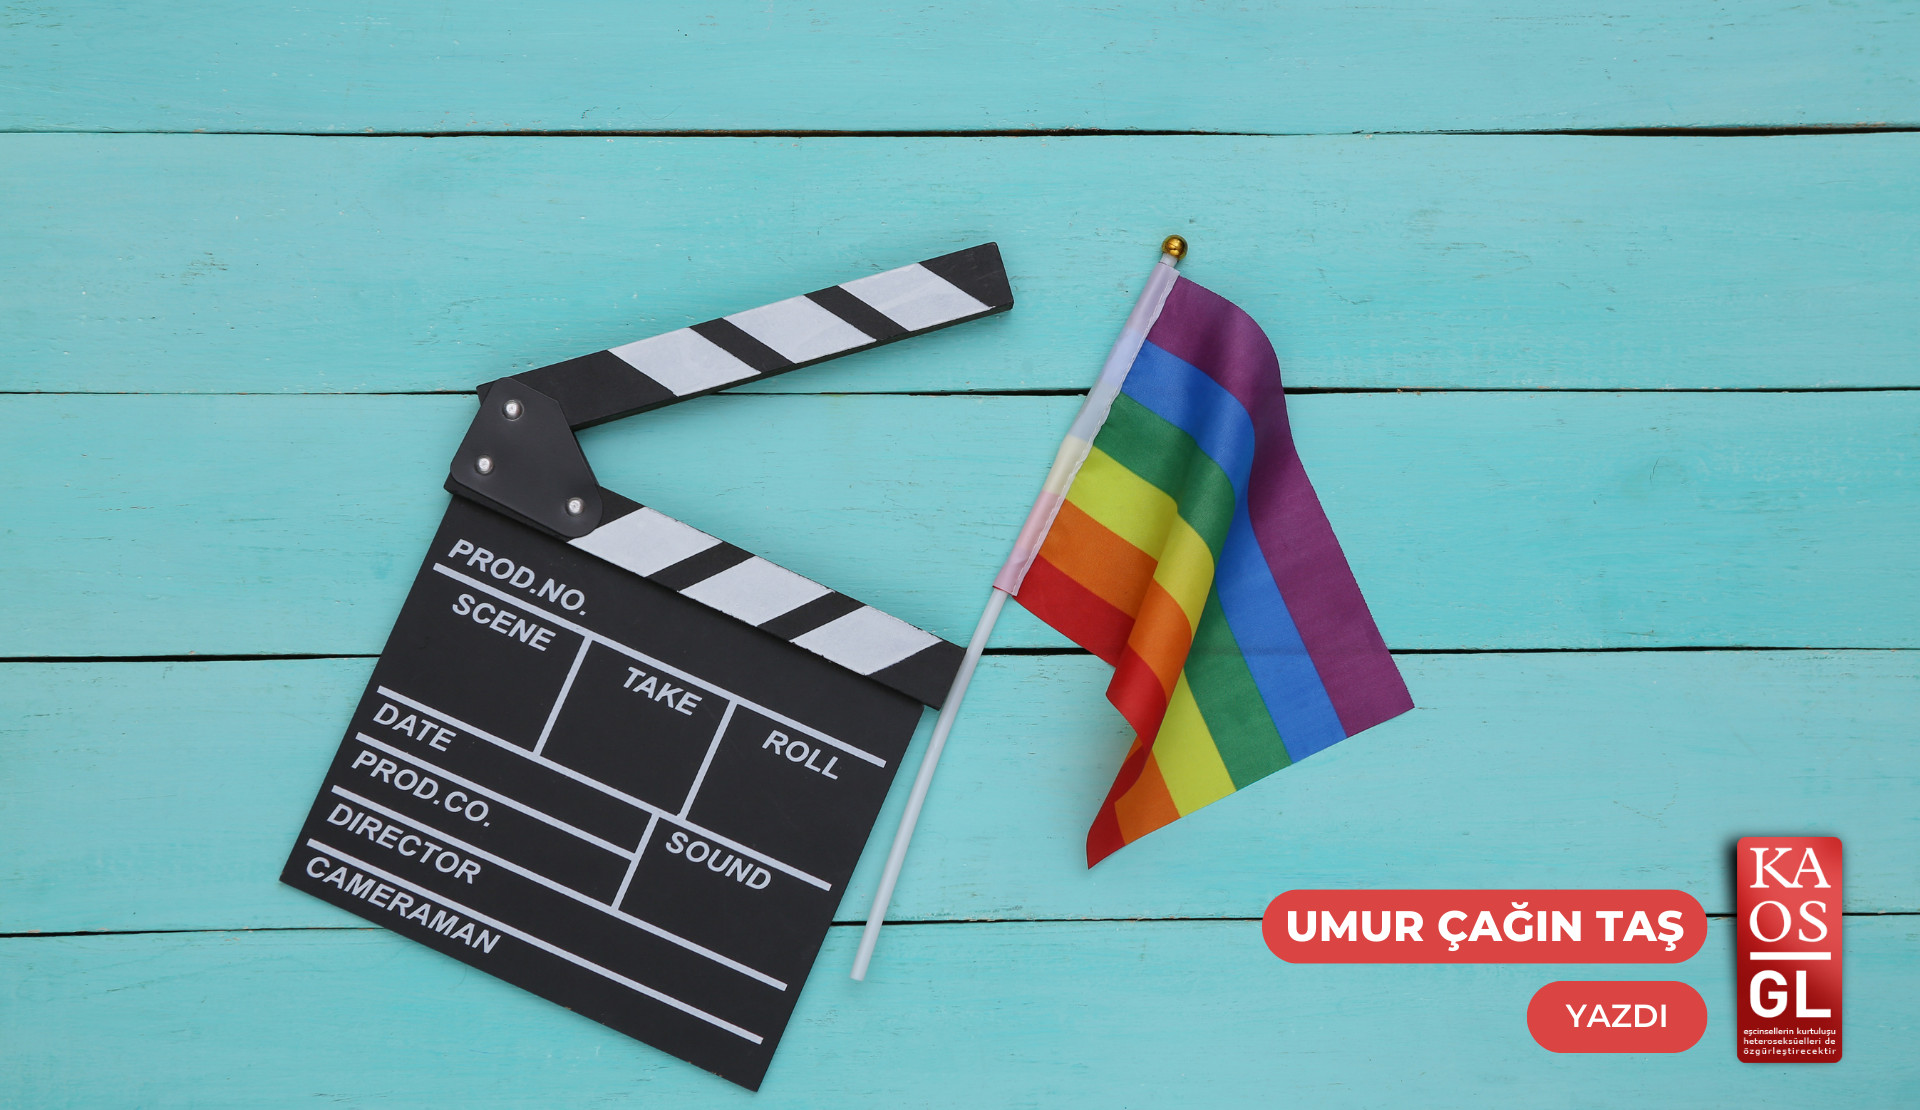 Sinema ve televizyonda neredeydik, ne olduk? | Kaos GL - LGBTİ+ Haber Portalı Gökkuşağı Forumu Köşe Yazısı